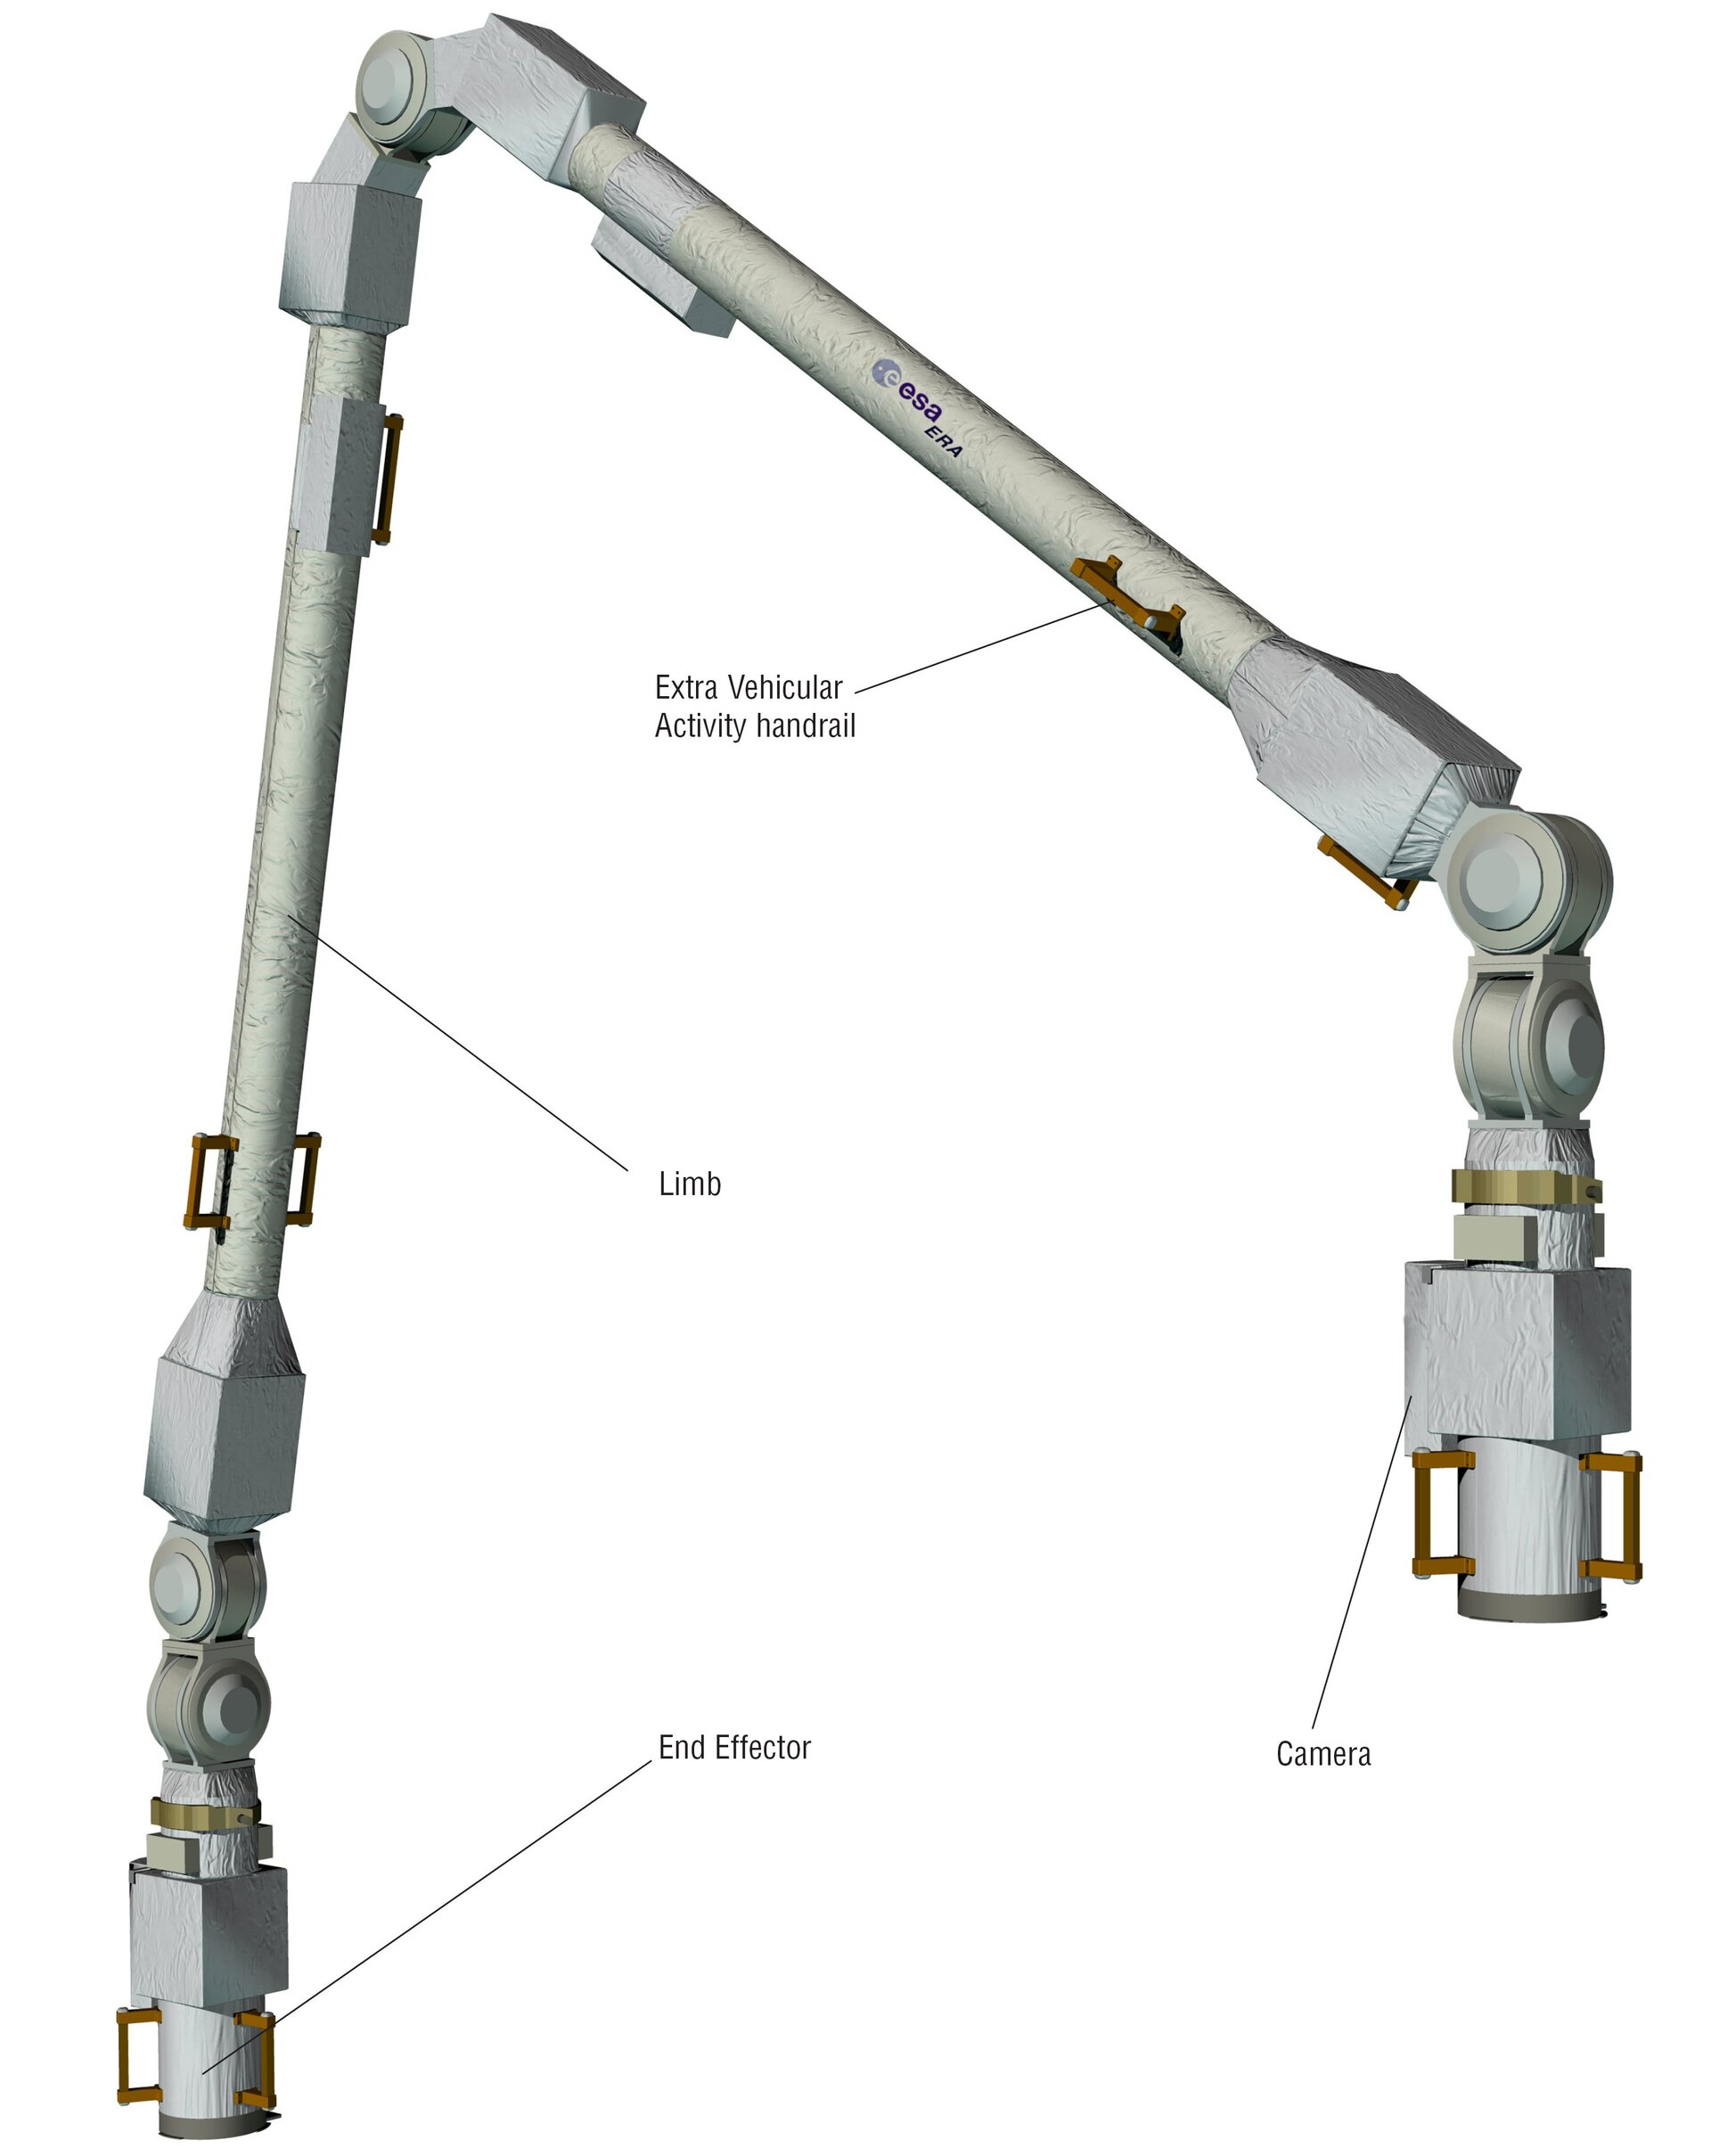 ESA - European Robotic Arm